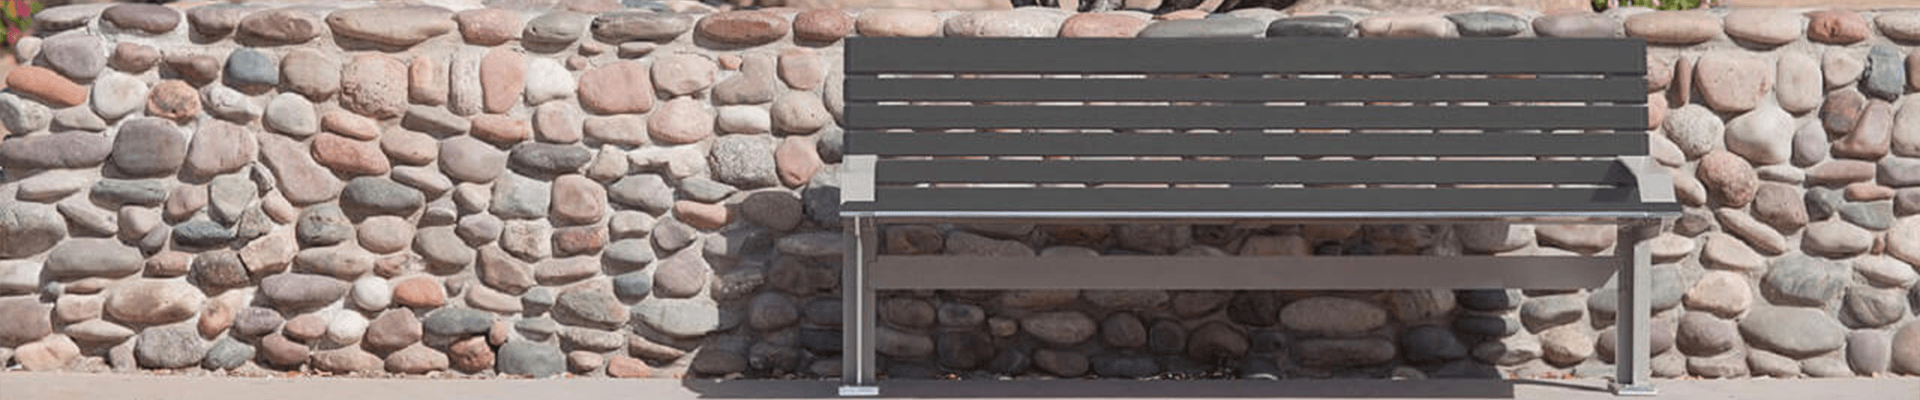 安博体育官方下载-不锈钢公园椅,户外公园椅生产厂家-安博体育电竞ios